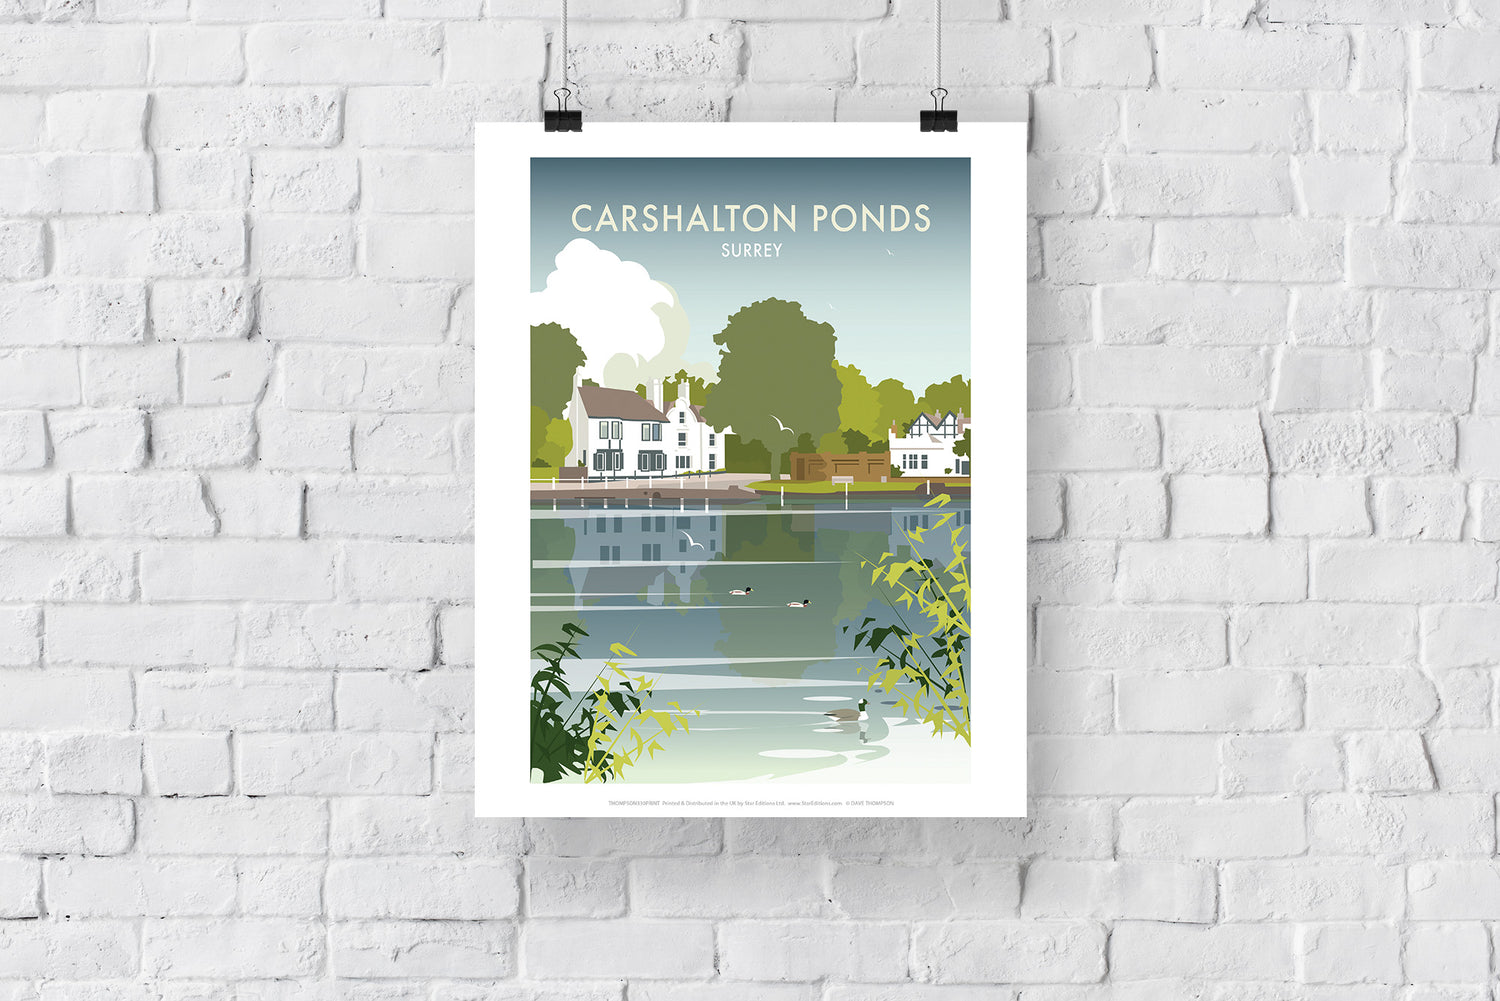 Carshalton Ponds, Surrey - Art Print